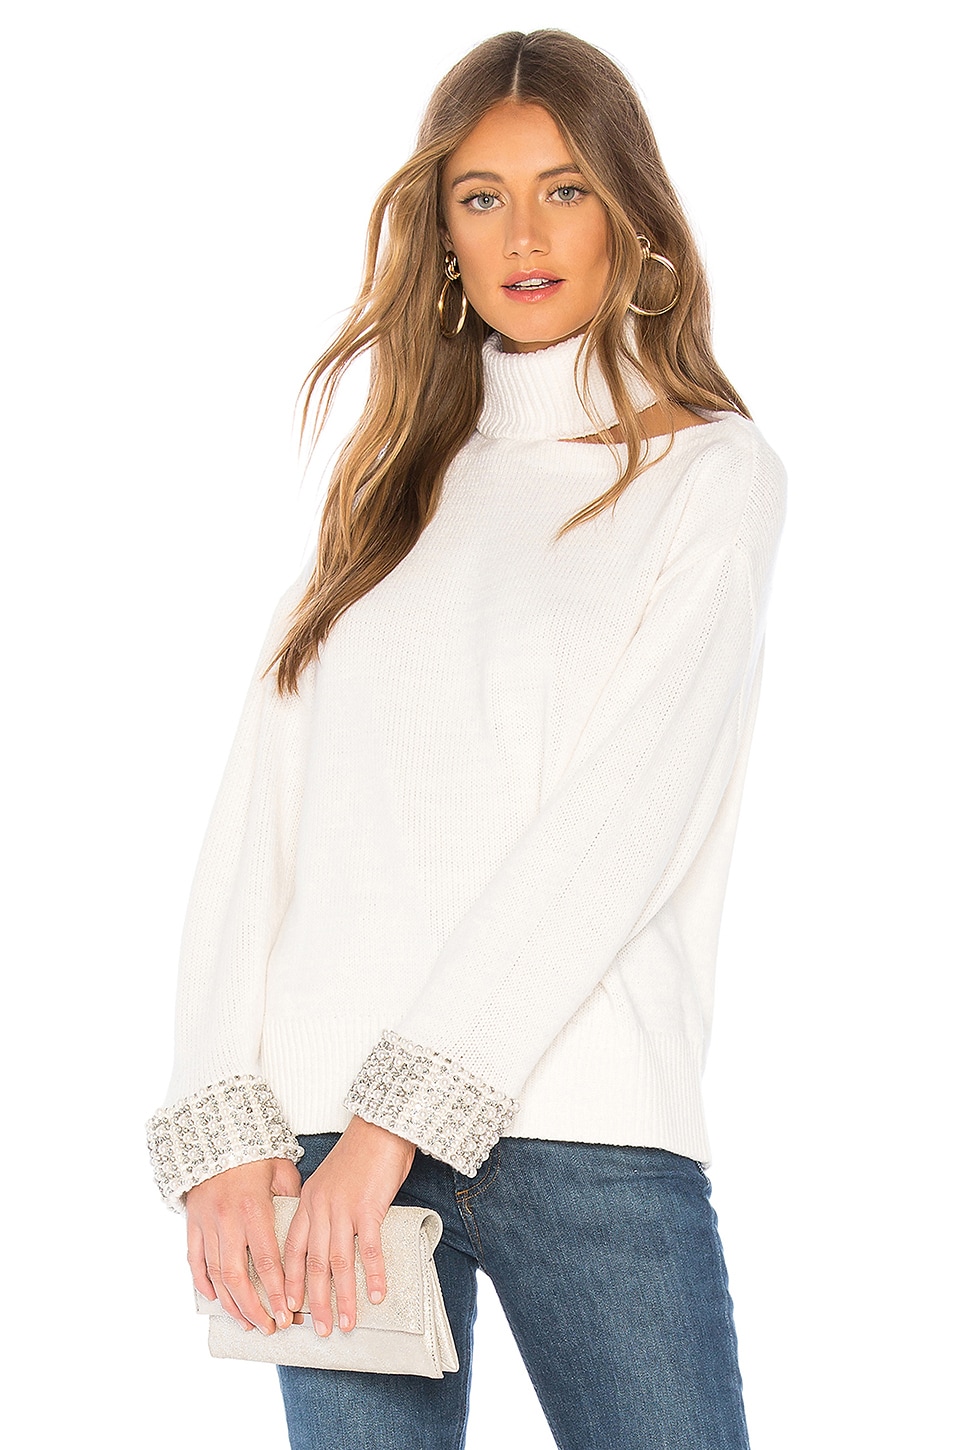 Alice + Olivia Gemini Turtleneck Sweater in Soft White | REVOLVE